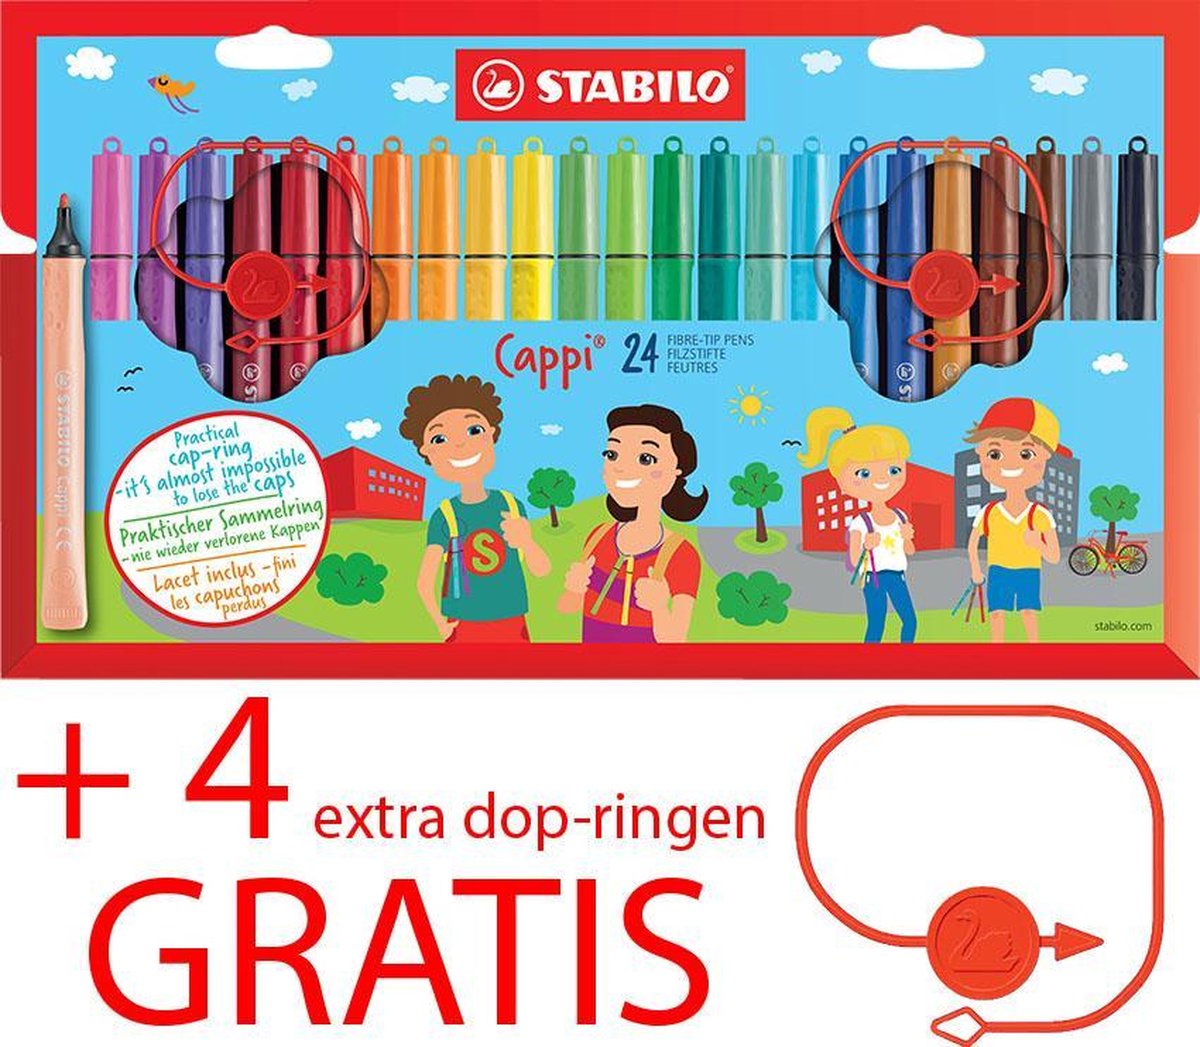 Carry kwaadheid de vrije loop geven merknaam Viltstiften STABILO Cappi - etui met 24 kleuren + 4 extra dop-ringen GRATIS  | bol.com